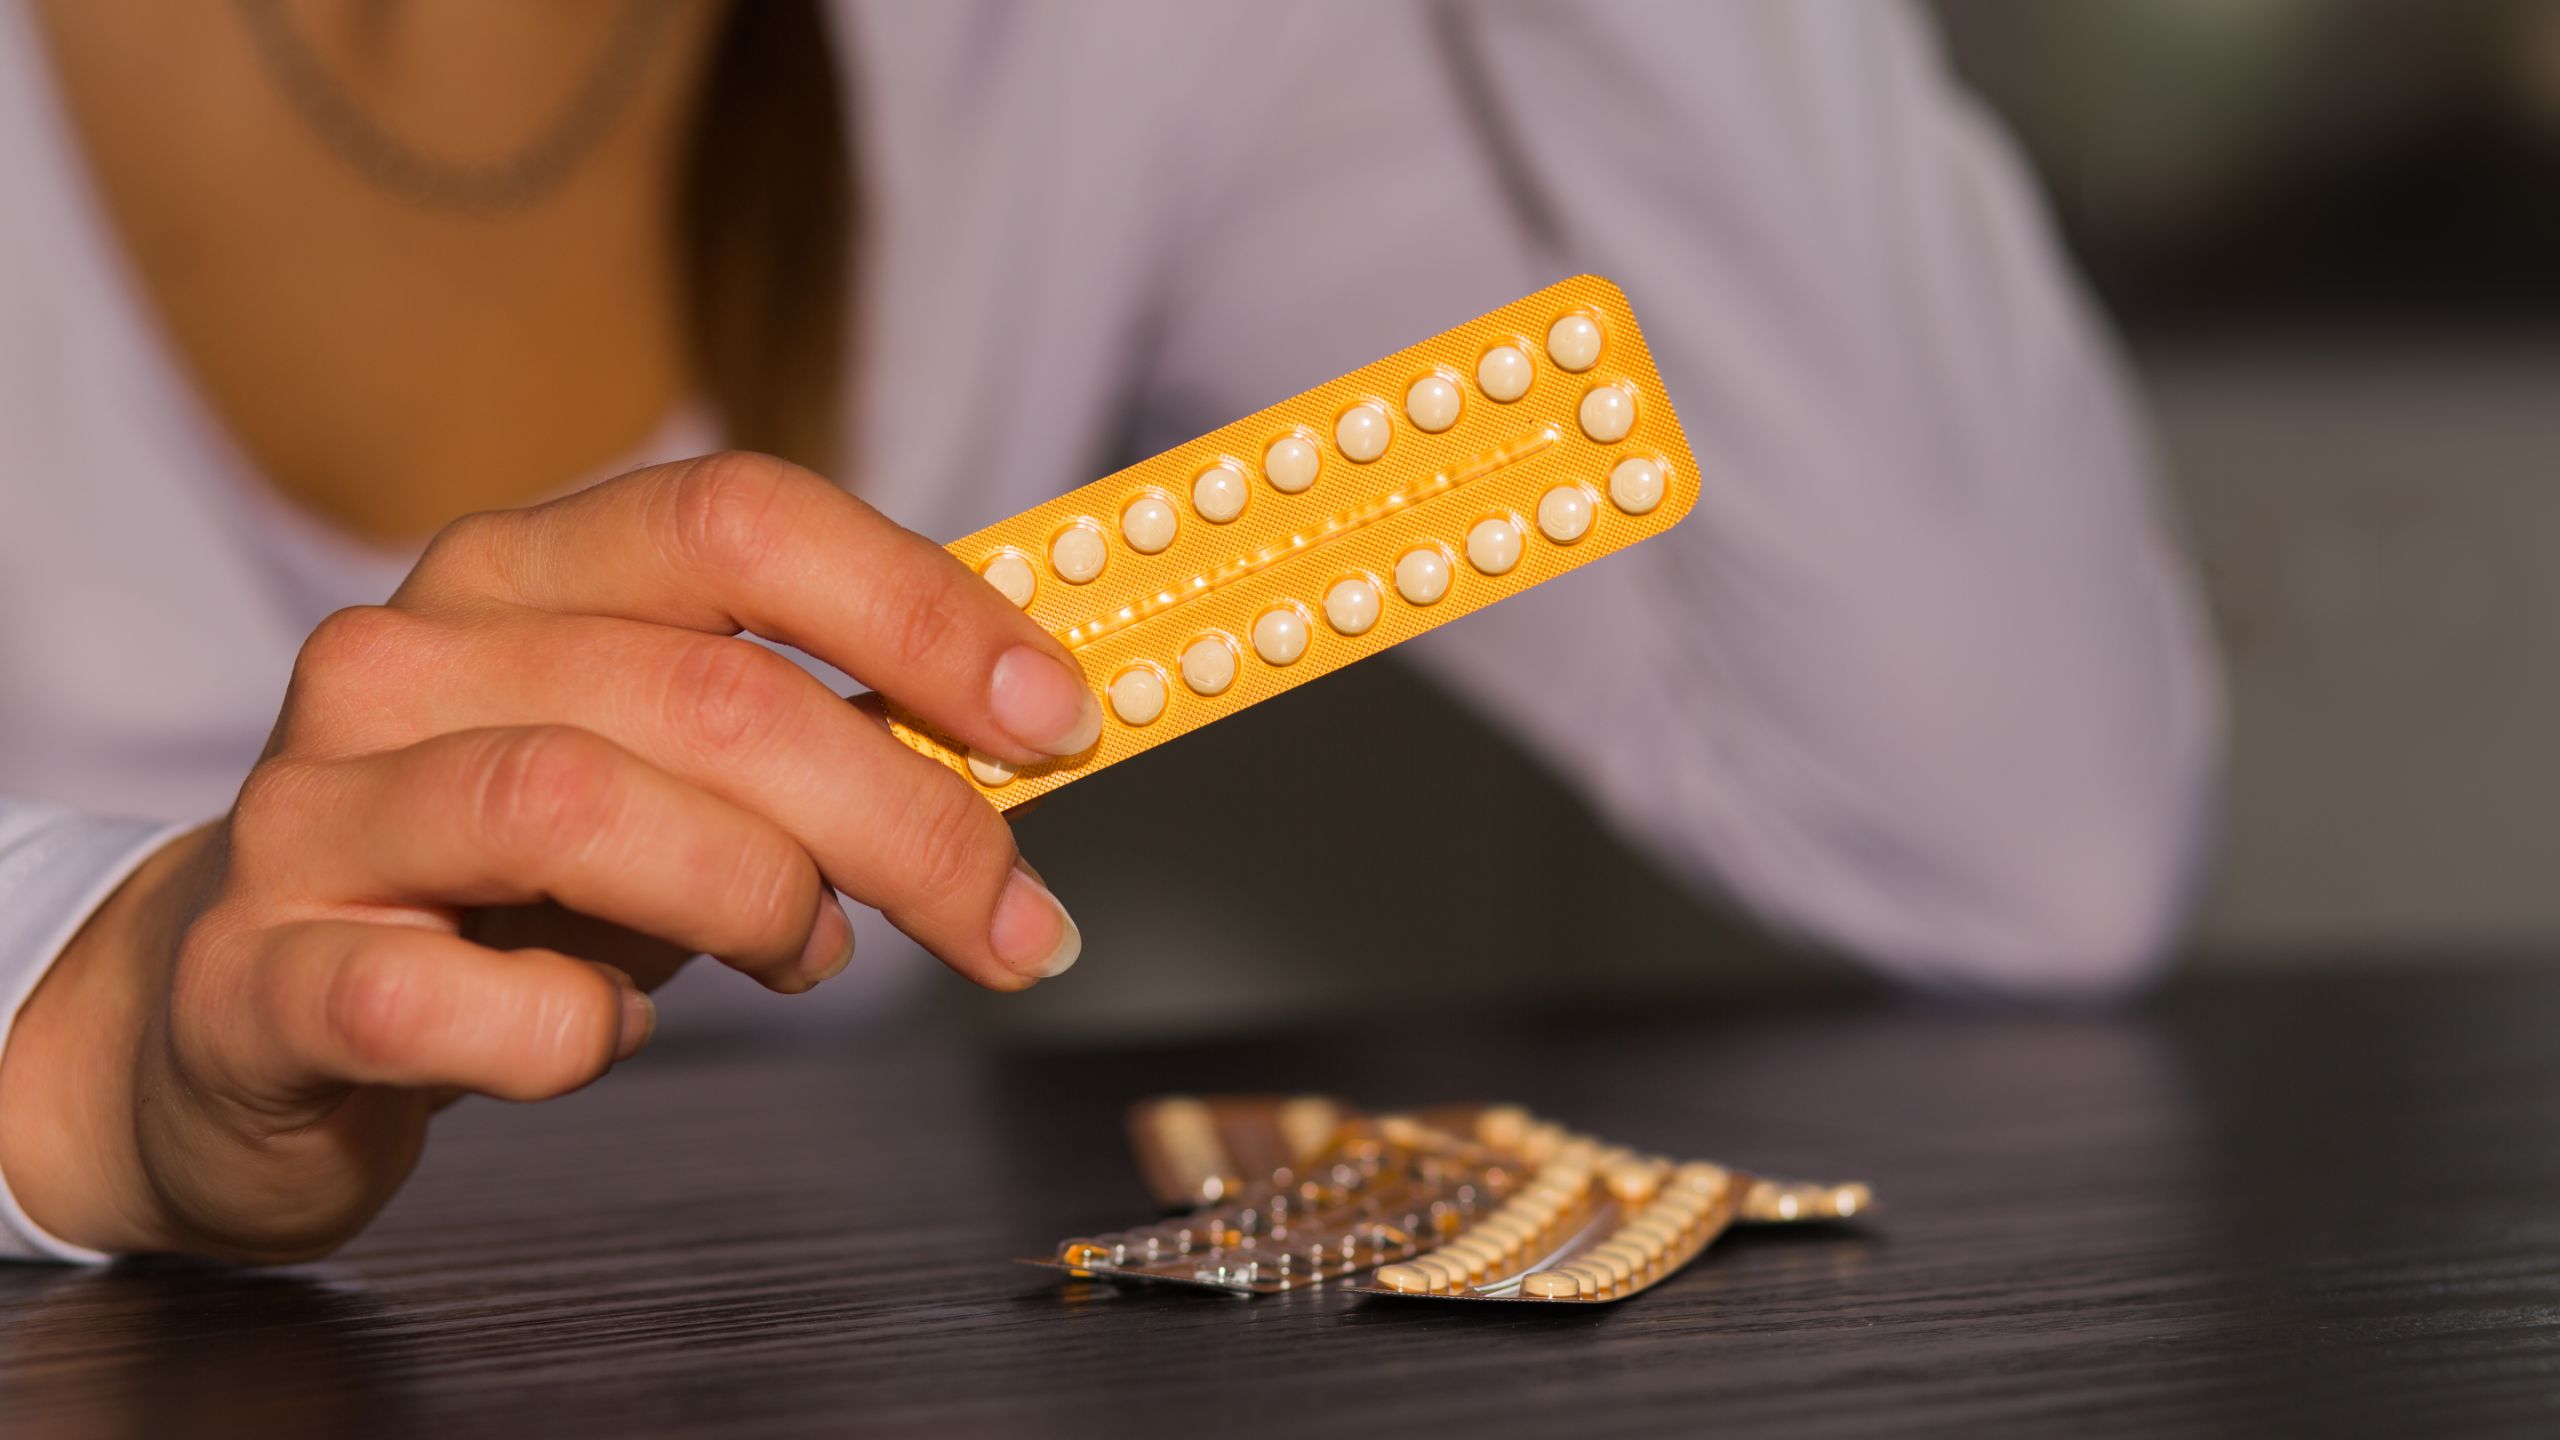 Langdurig de anticonceptiepil slikken is dat schadelijk? afbeelding